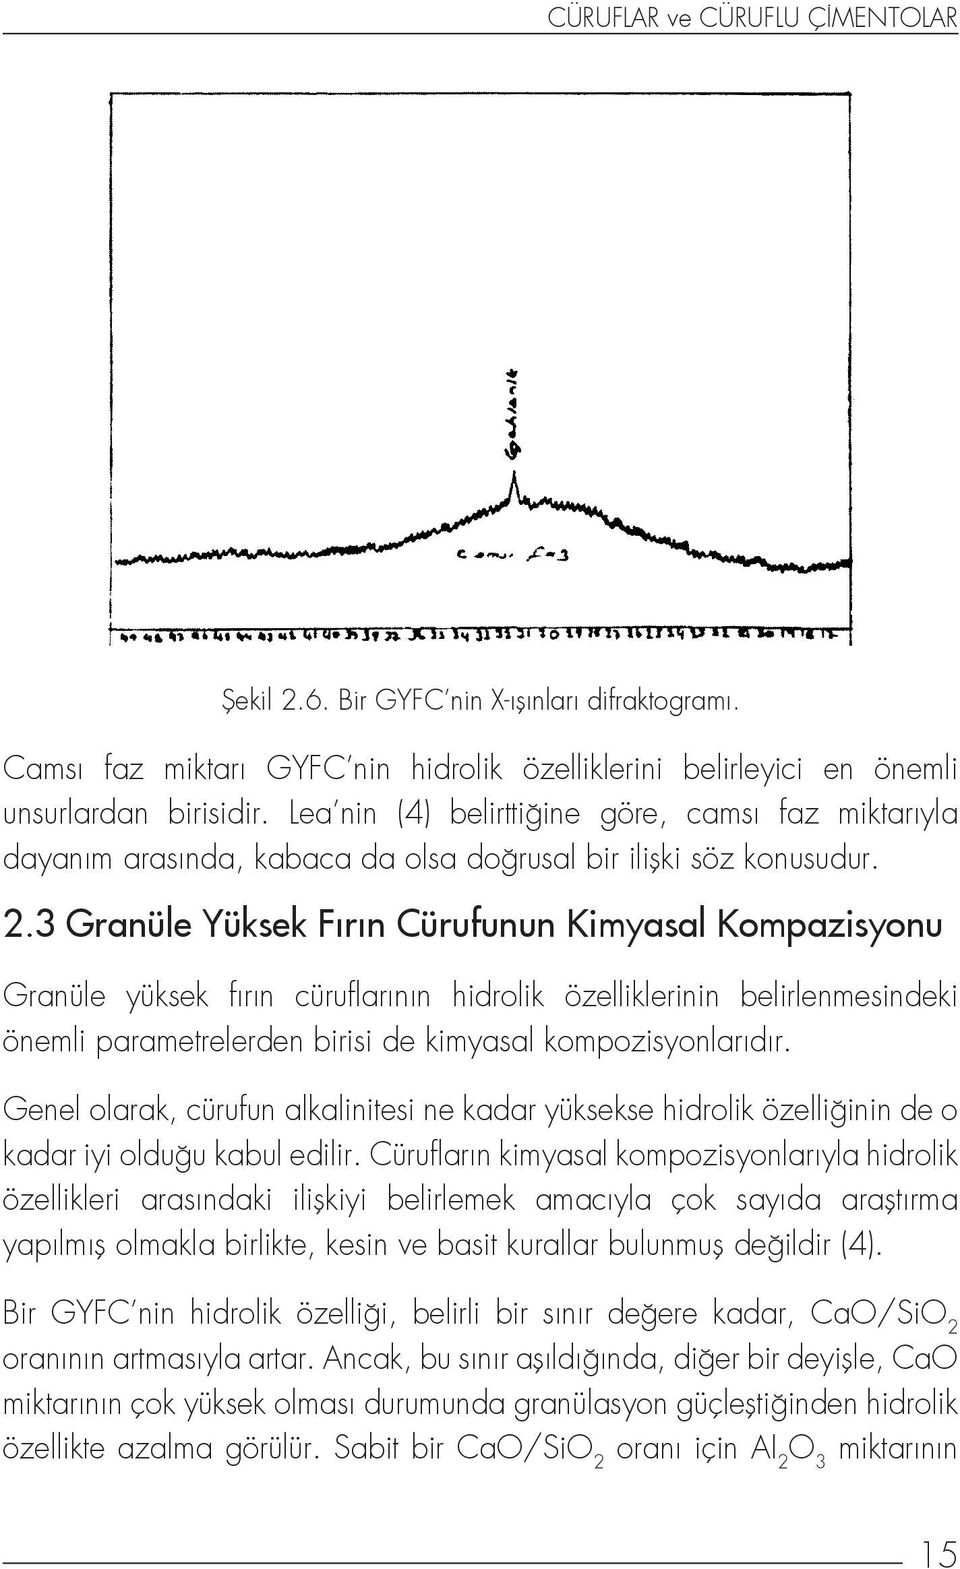 3 Granüle Yüksek Fırın Cürufunun Kimyasal Kompazisyonu Granüle yüksek fırın cüruflarının hidrolik özelliklerinin belirlenmesindeki önemli parametrelerden birisi de kimyasal kompozisyonlarıdır.